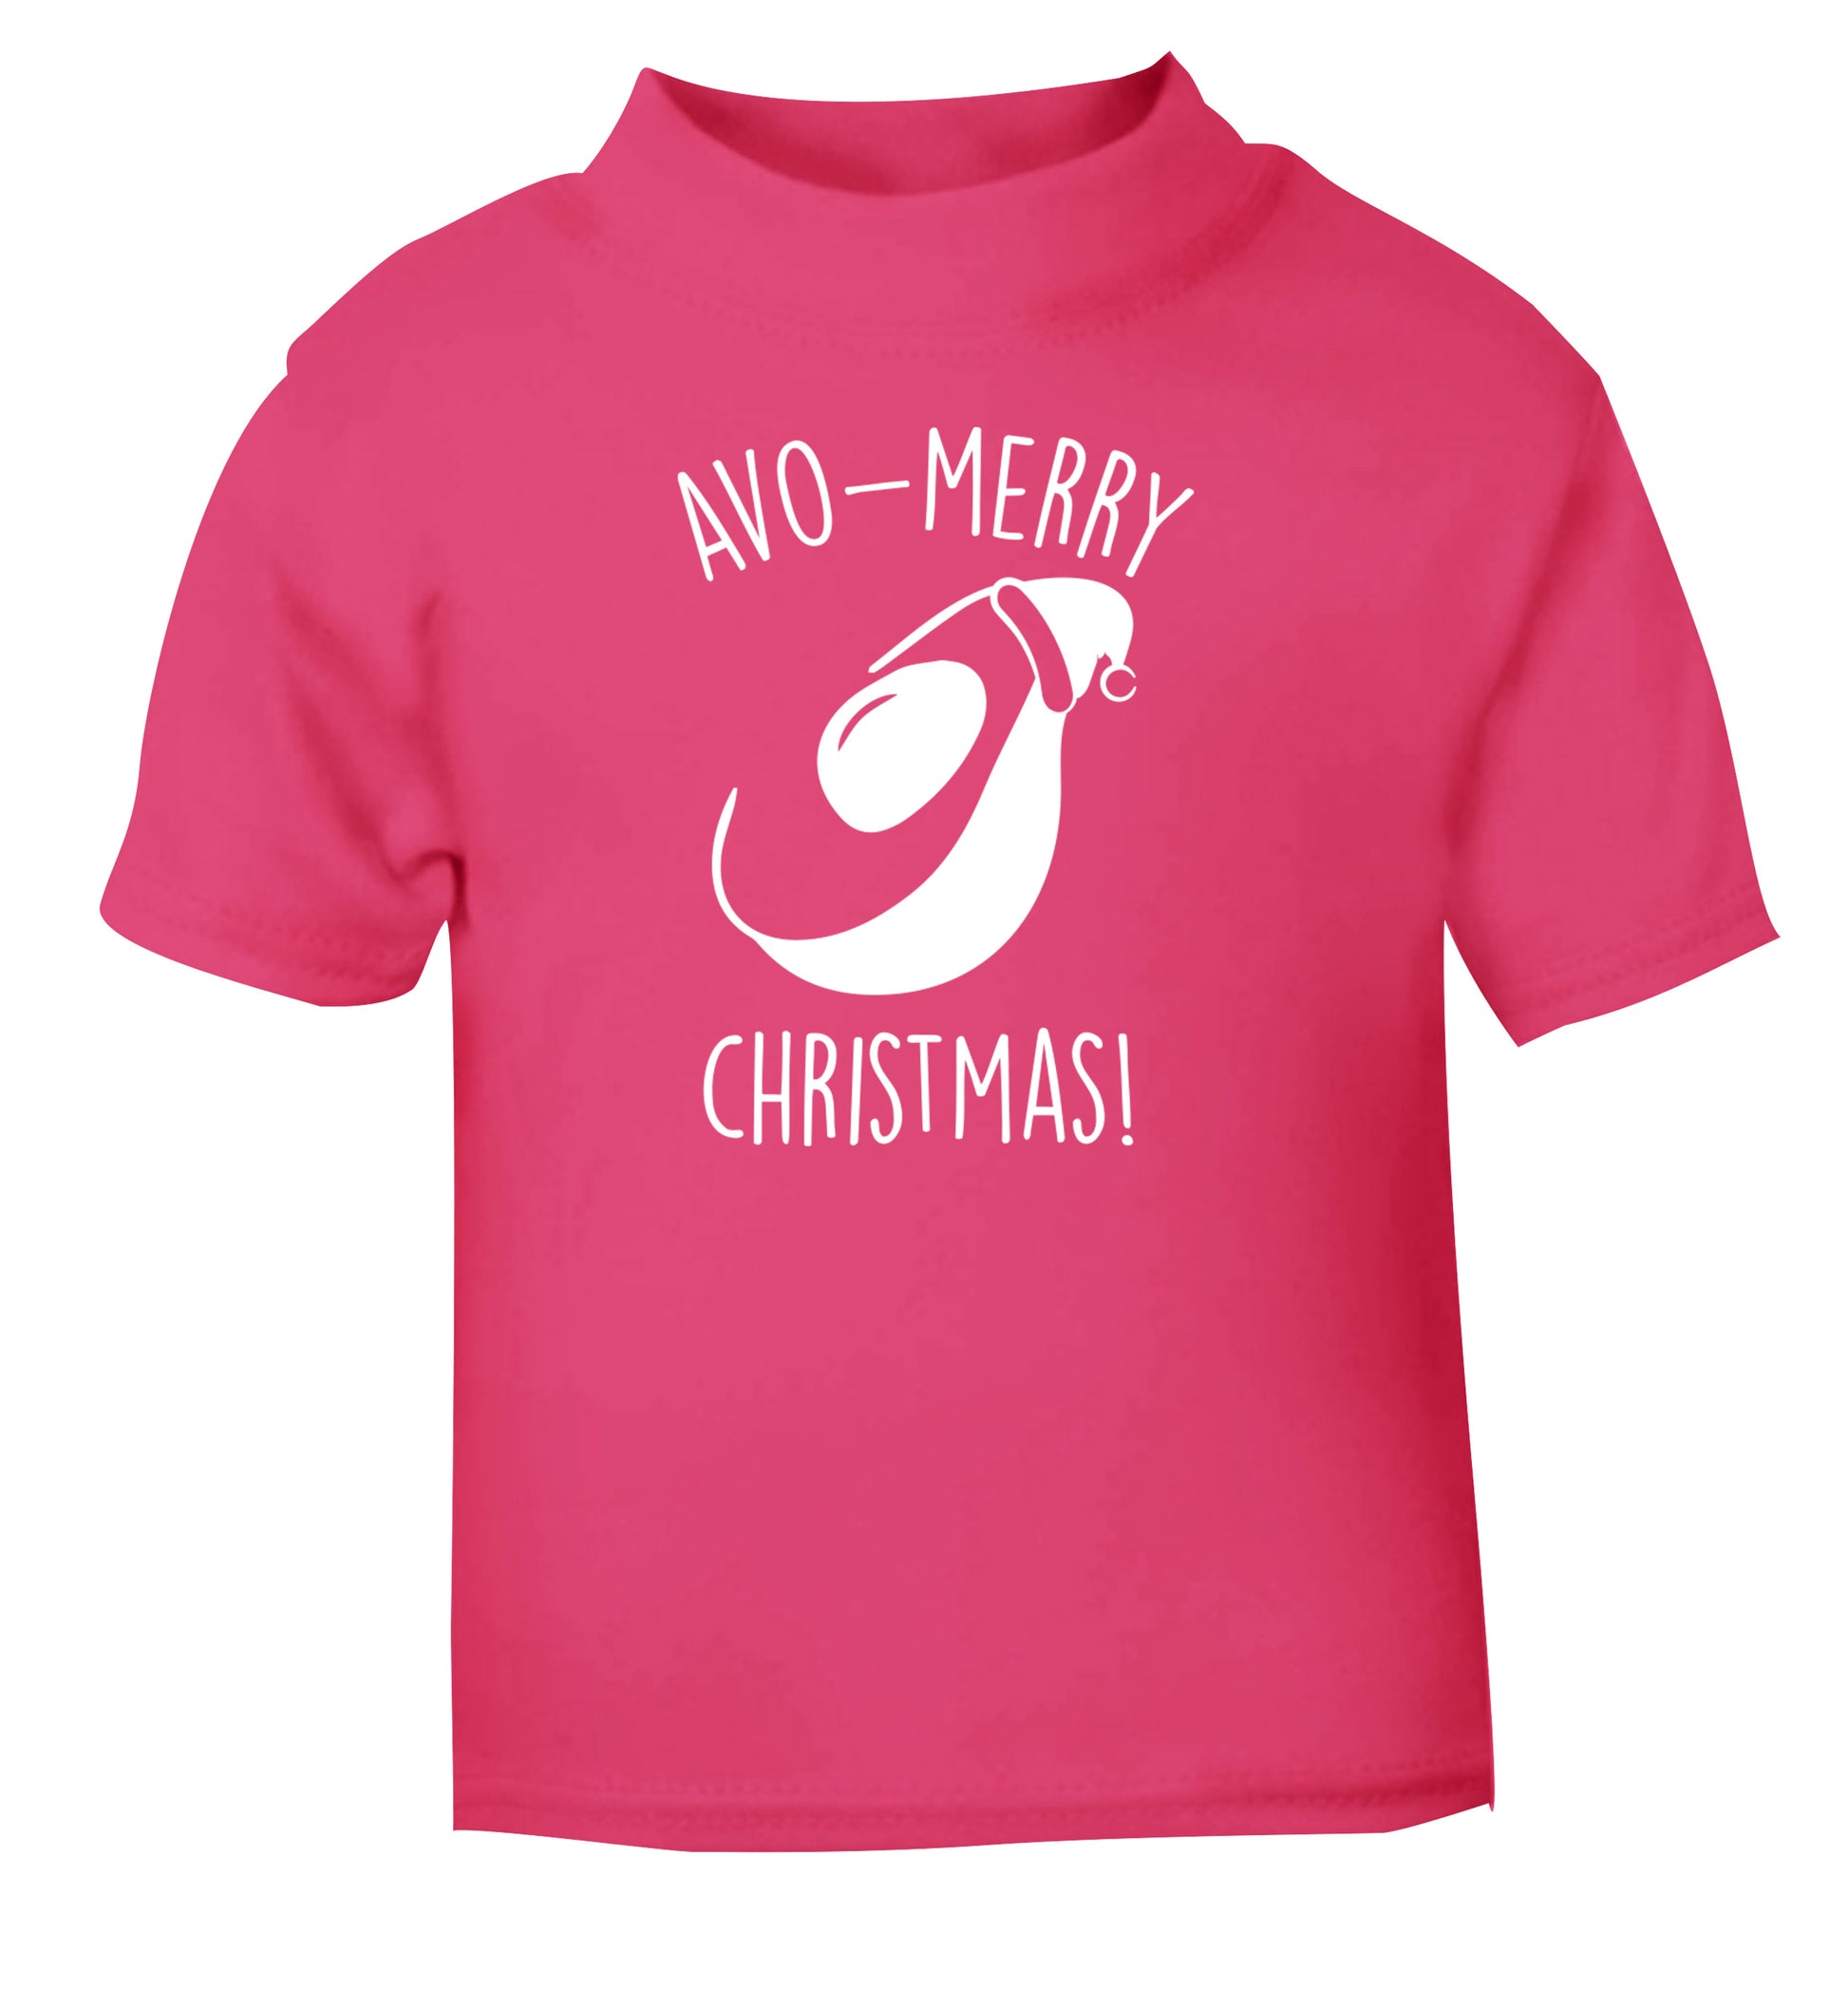 Avo-Merry Christmas pink Baby Toddler Tshirt 2 Years